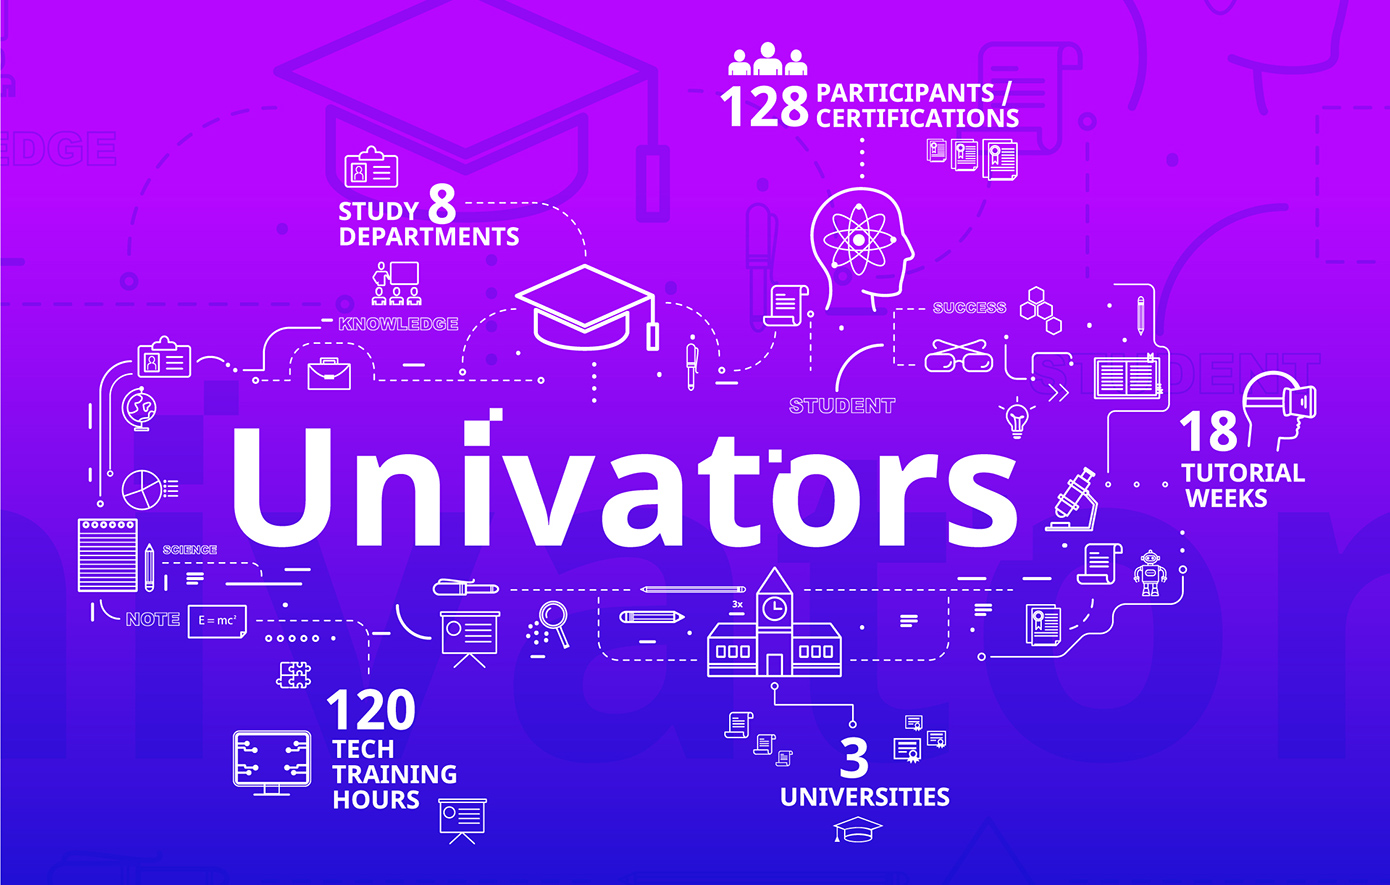 Univators: Skilling Future Digital Innovators